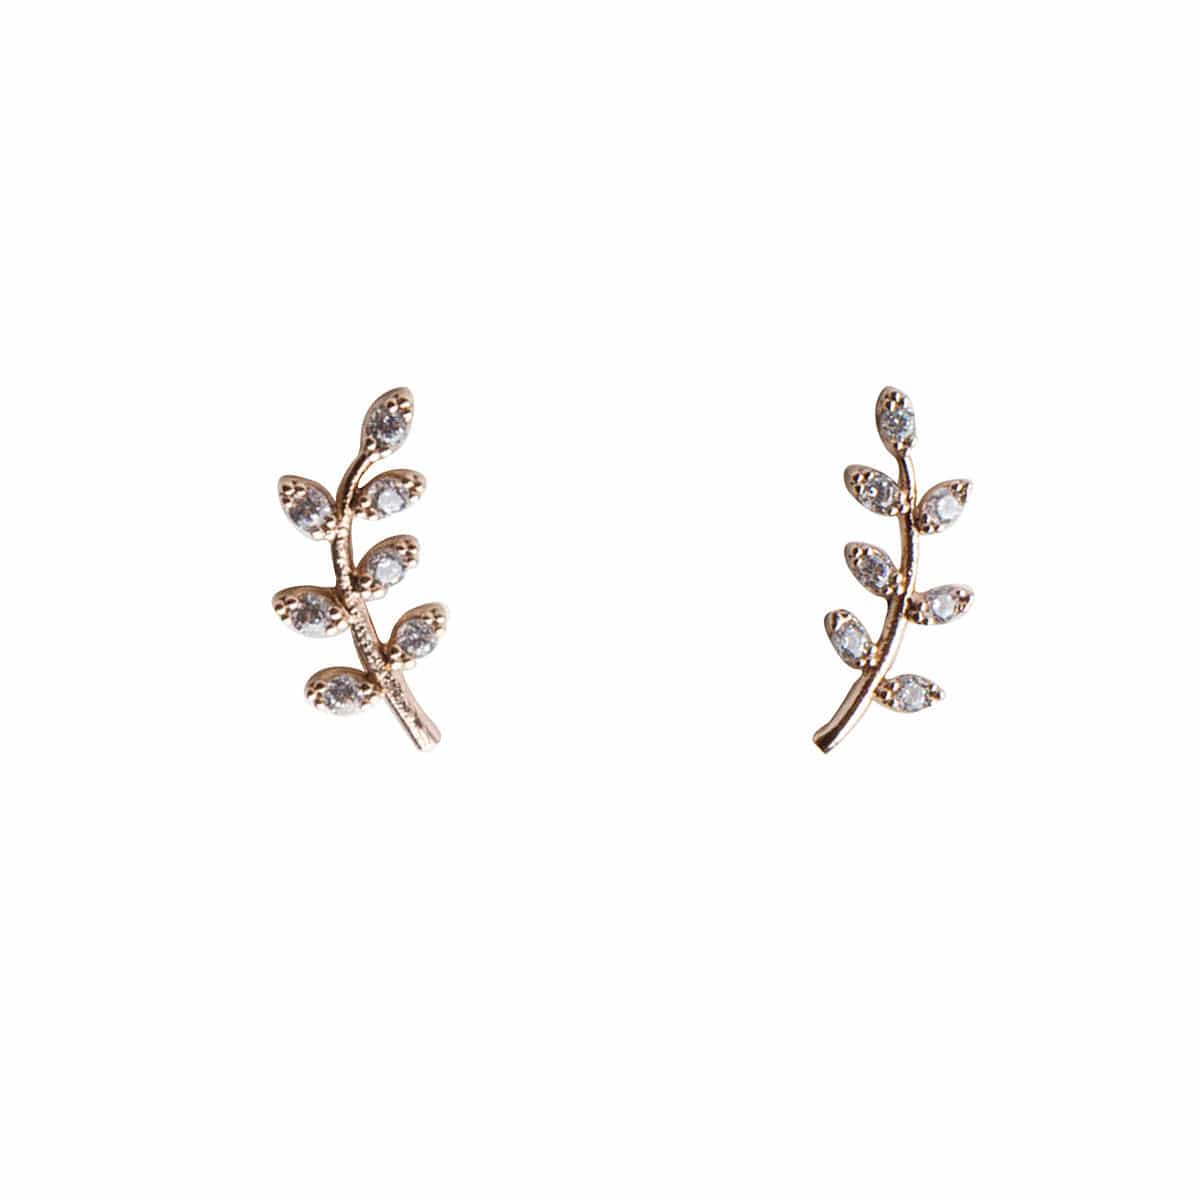 TAI JEWELRY Earrings ANTIQUE GOLD Leaf Earrings